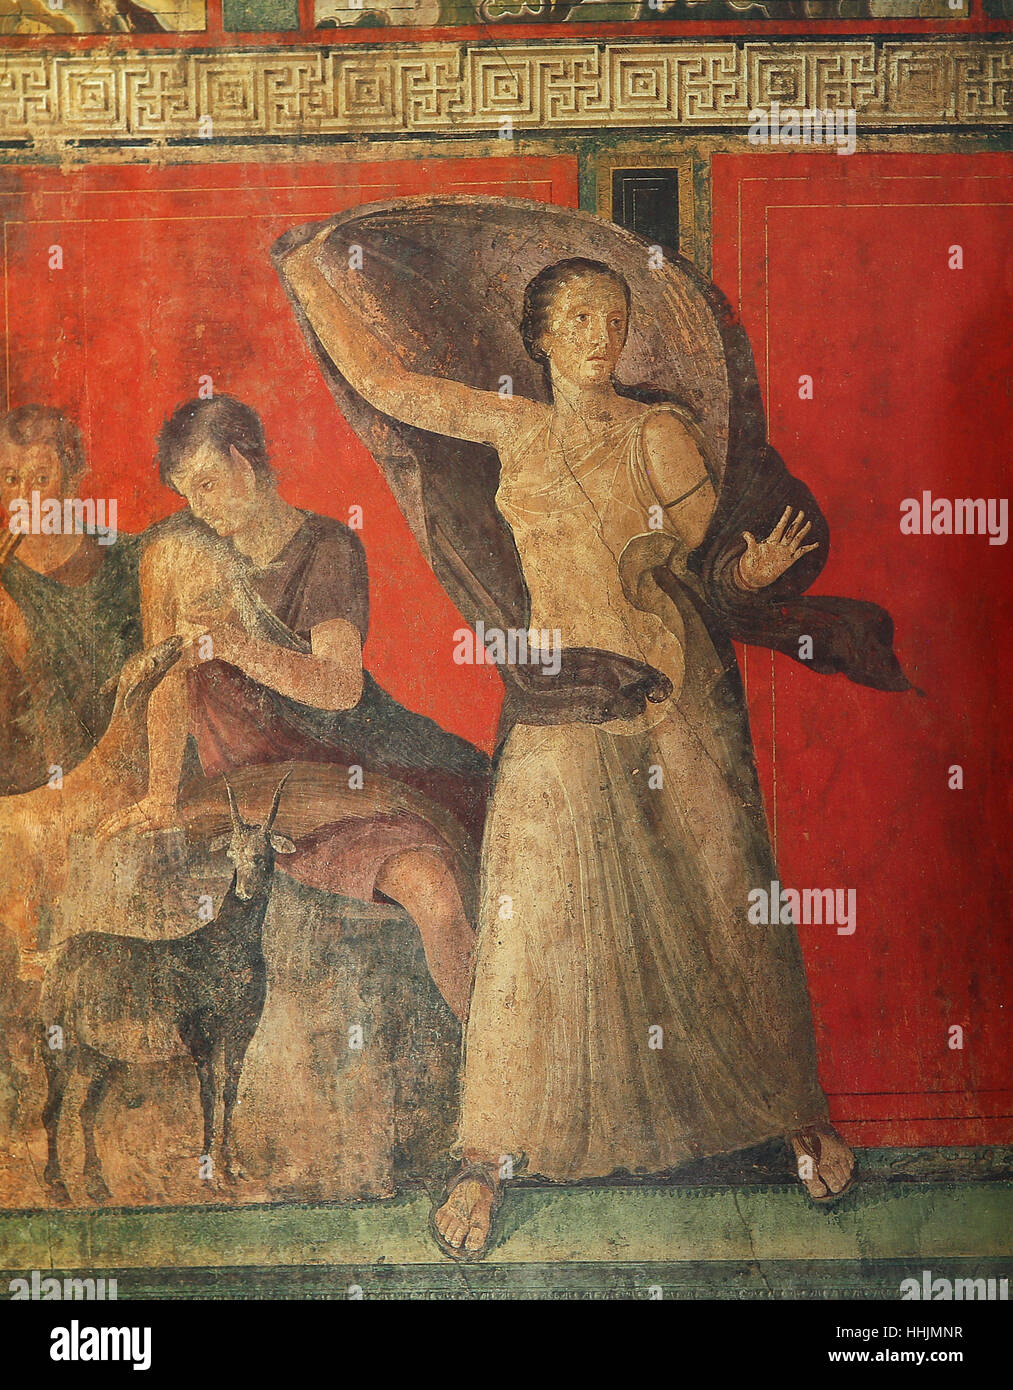 Nápoles, Italia - 14 de mayo de 2014: Los frescos en las ruinas de la antigua ciudad de Pompeya, cerca de Nápoles, Italia, el 14 de mayo de 2014, en Nápoles, Italia. Foto de stock